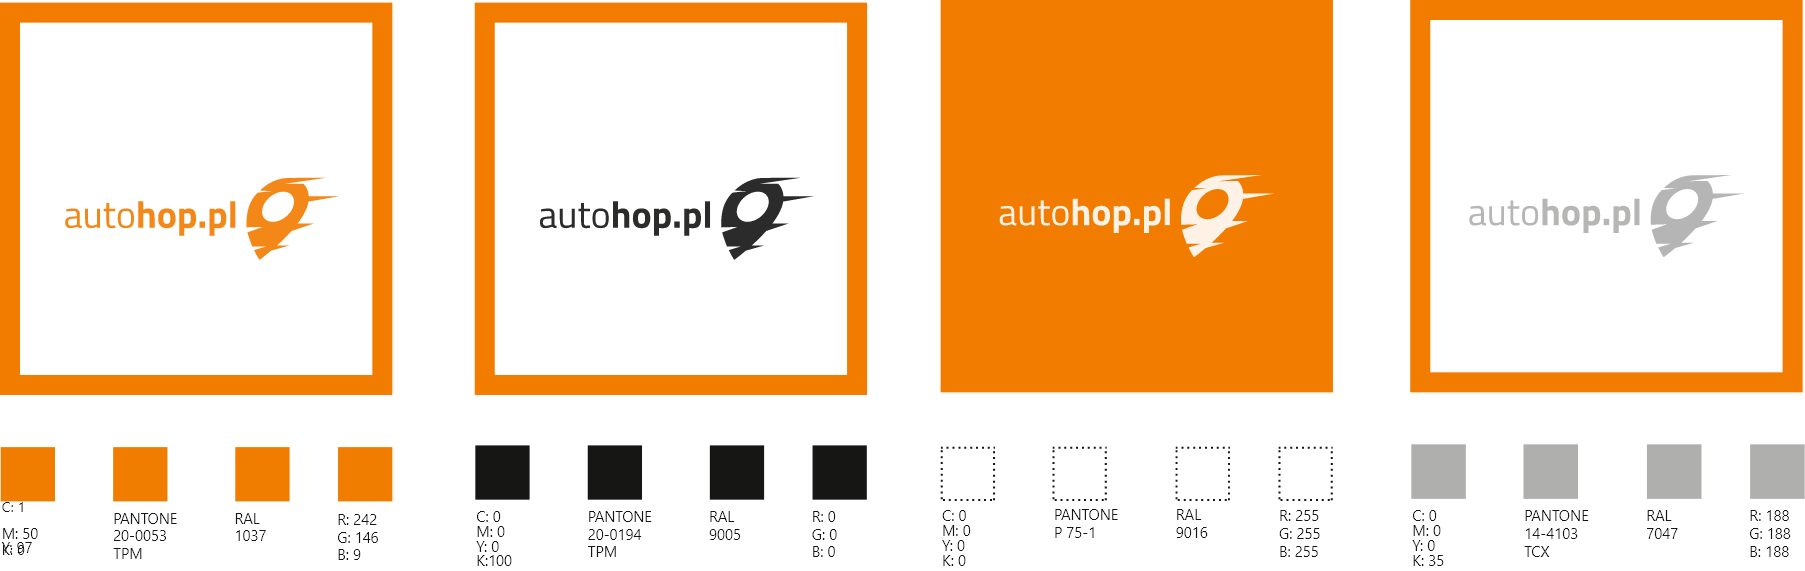 Schemat ukazujący kolorystykę sotosowaną przez markę AutoHOP w komunikacji marketingowej.